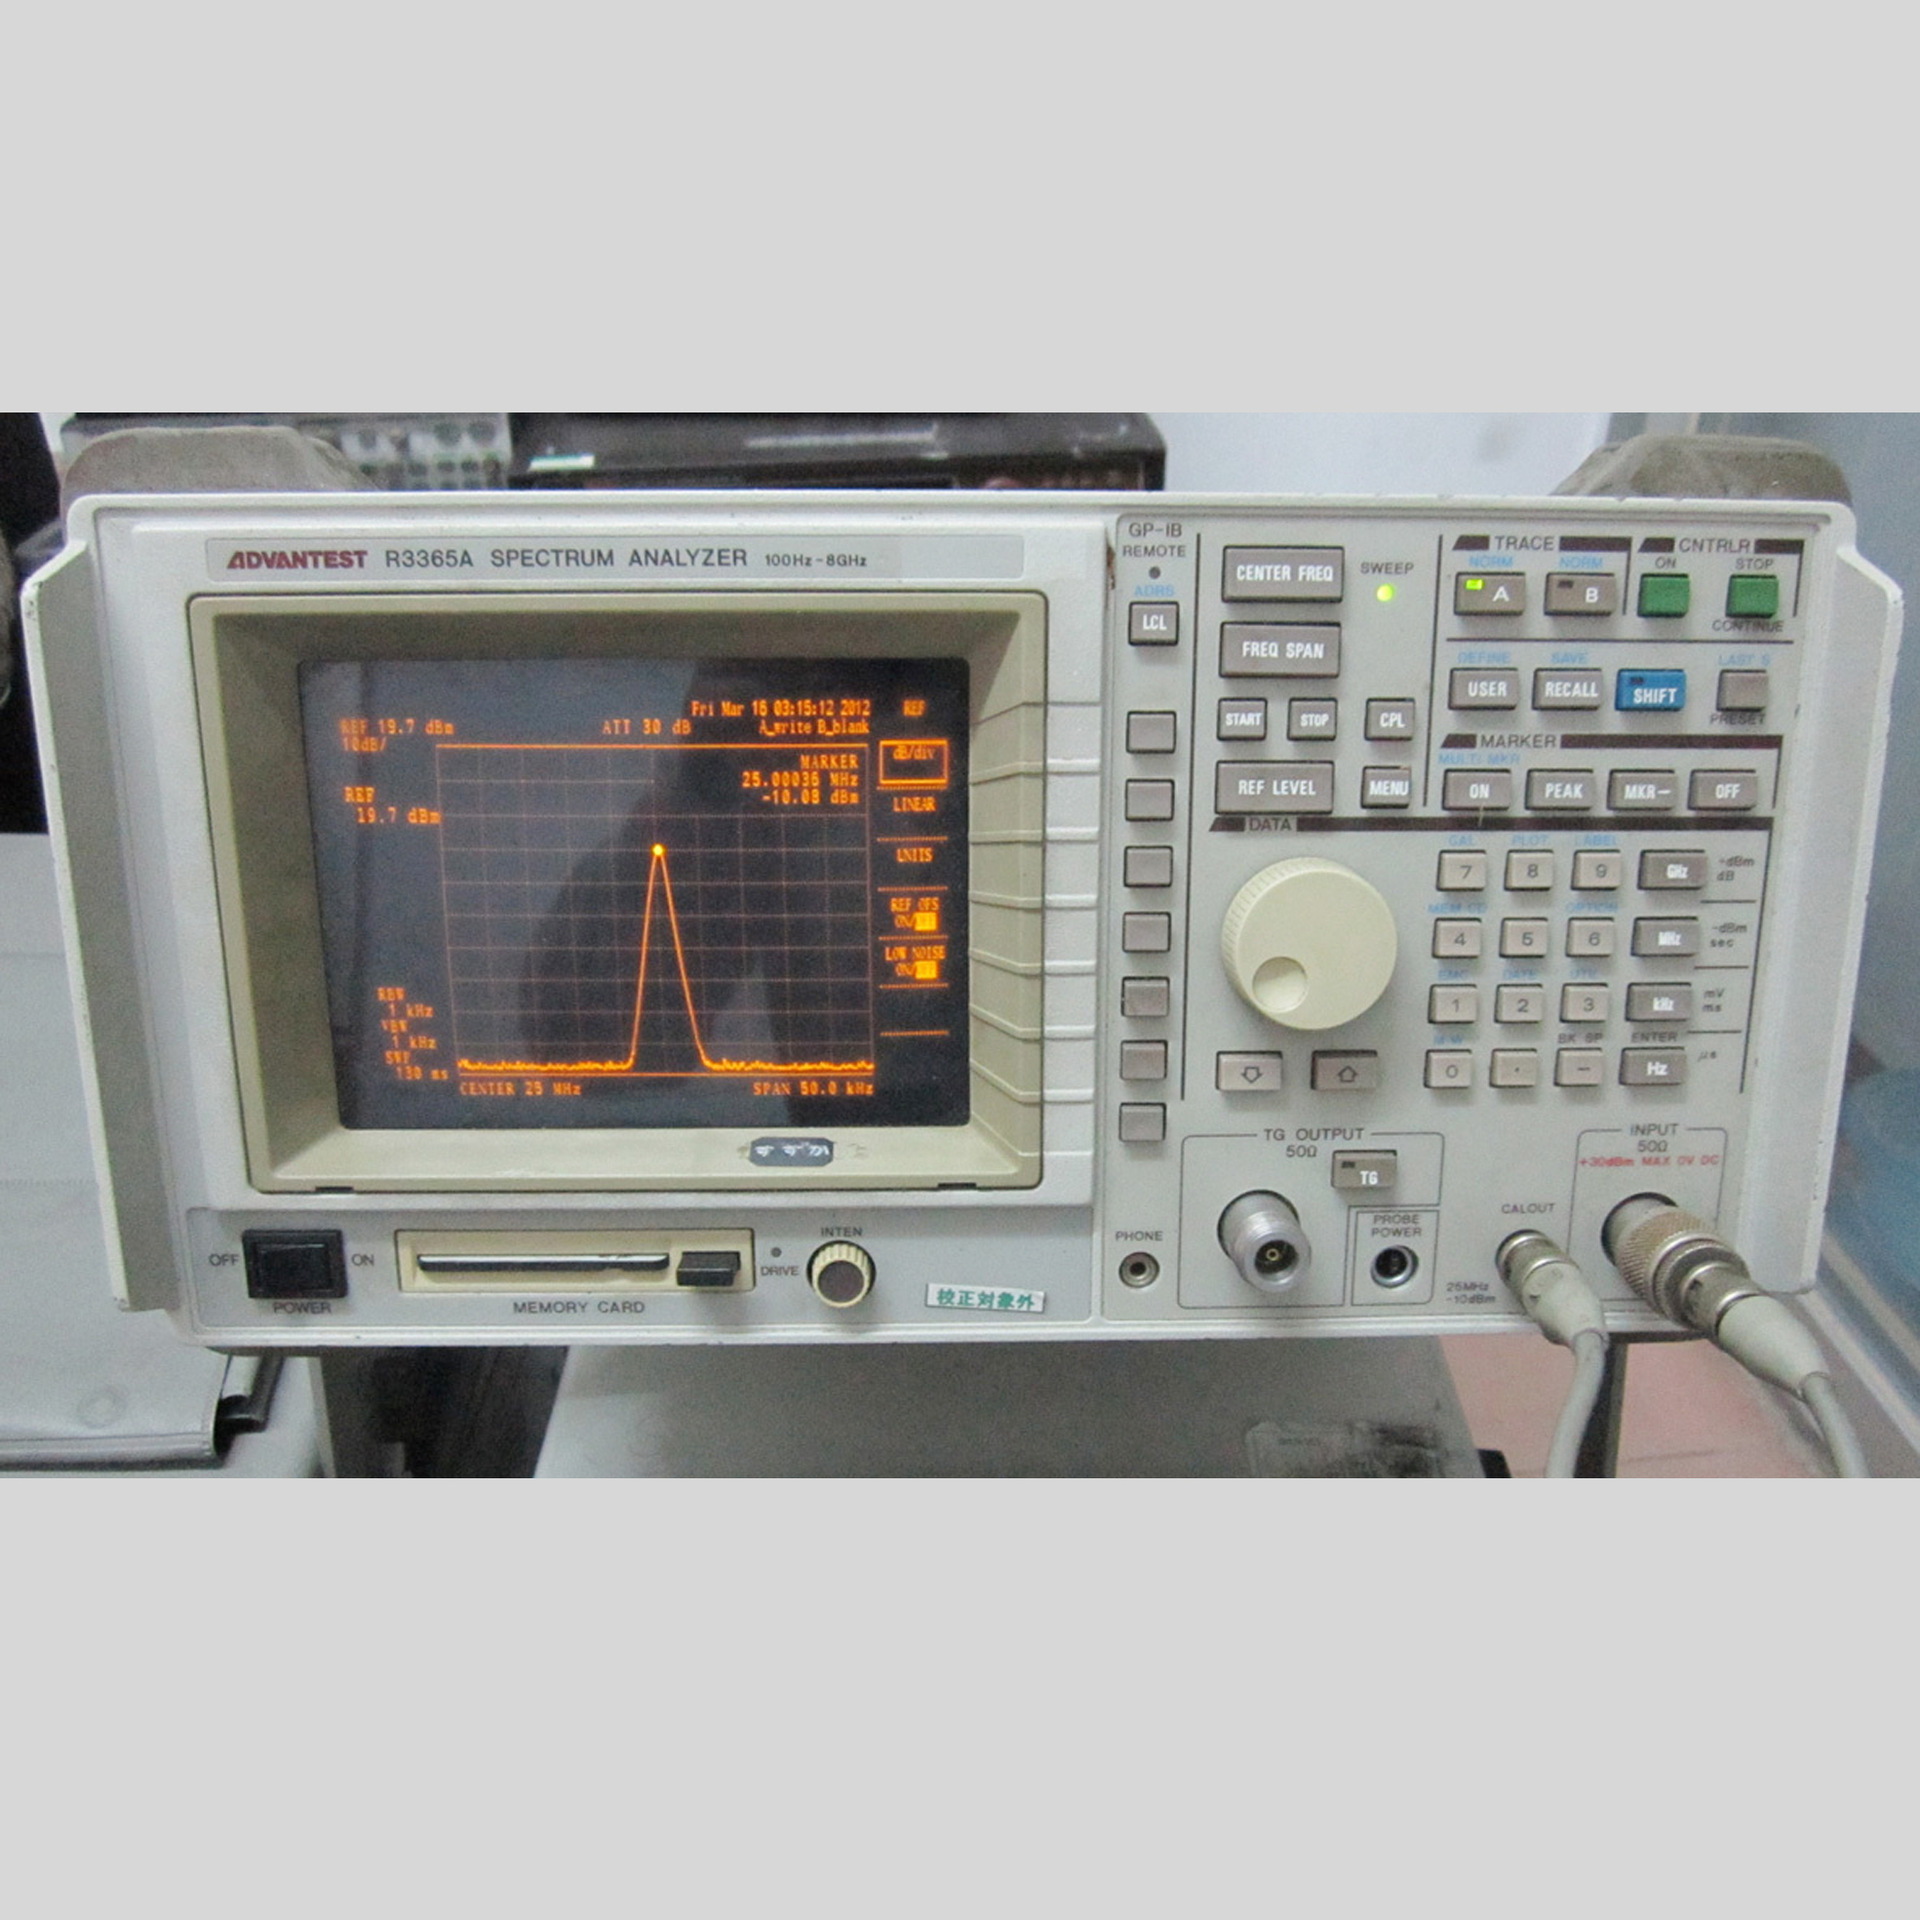 日本 爱德万Advantest R3365A 跟踪源频谱分析仪 100Hz-8GHz